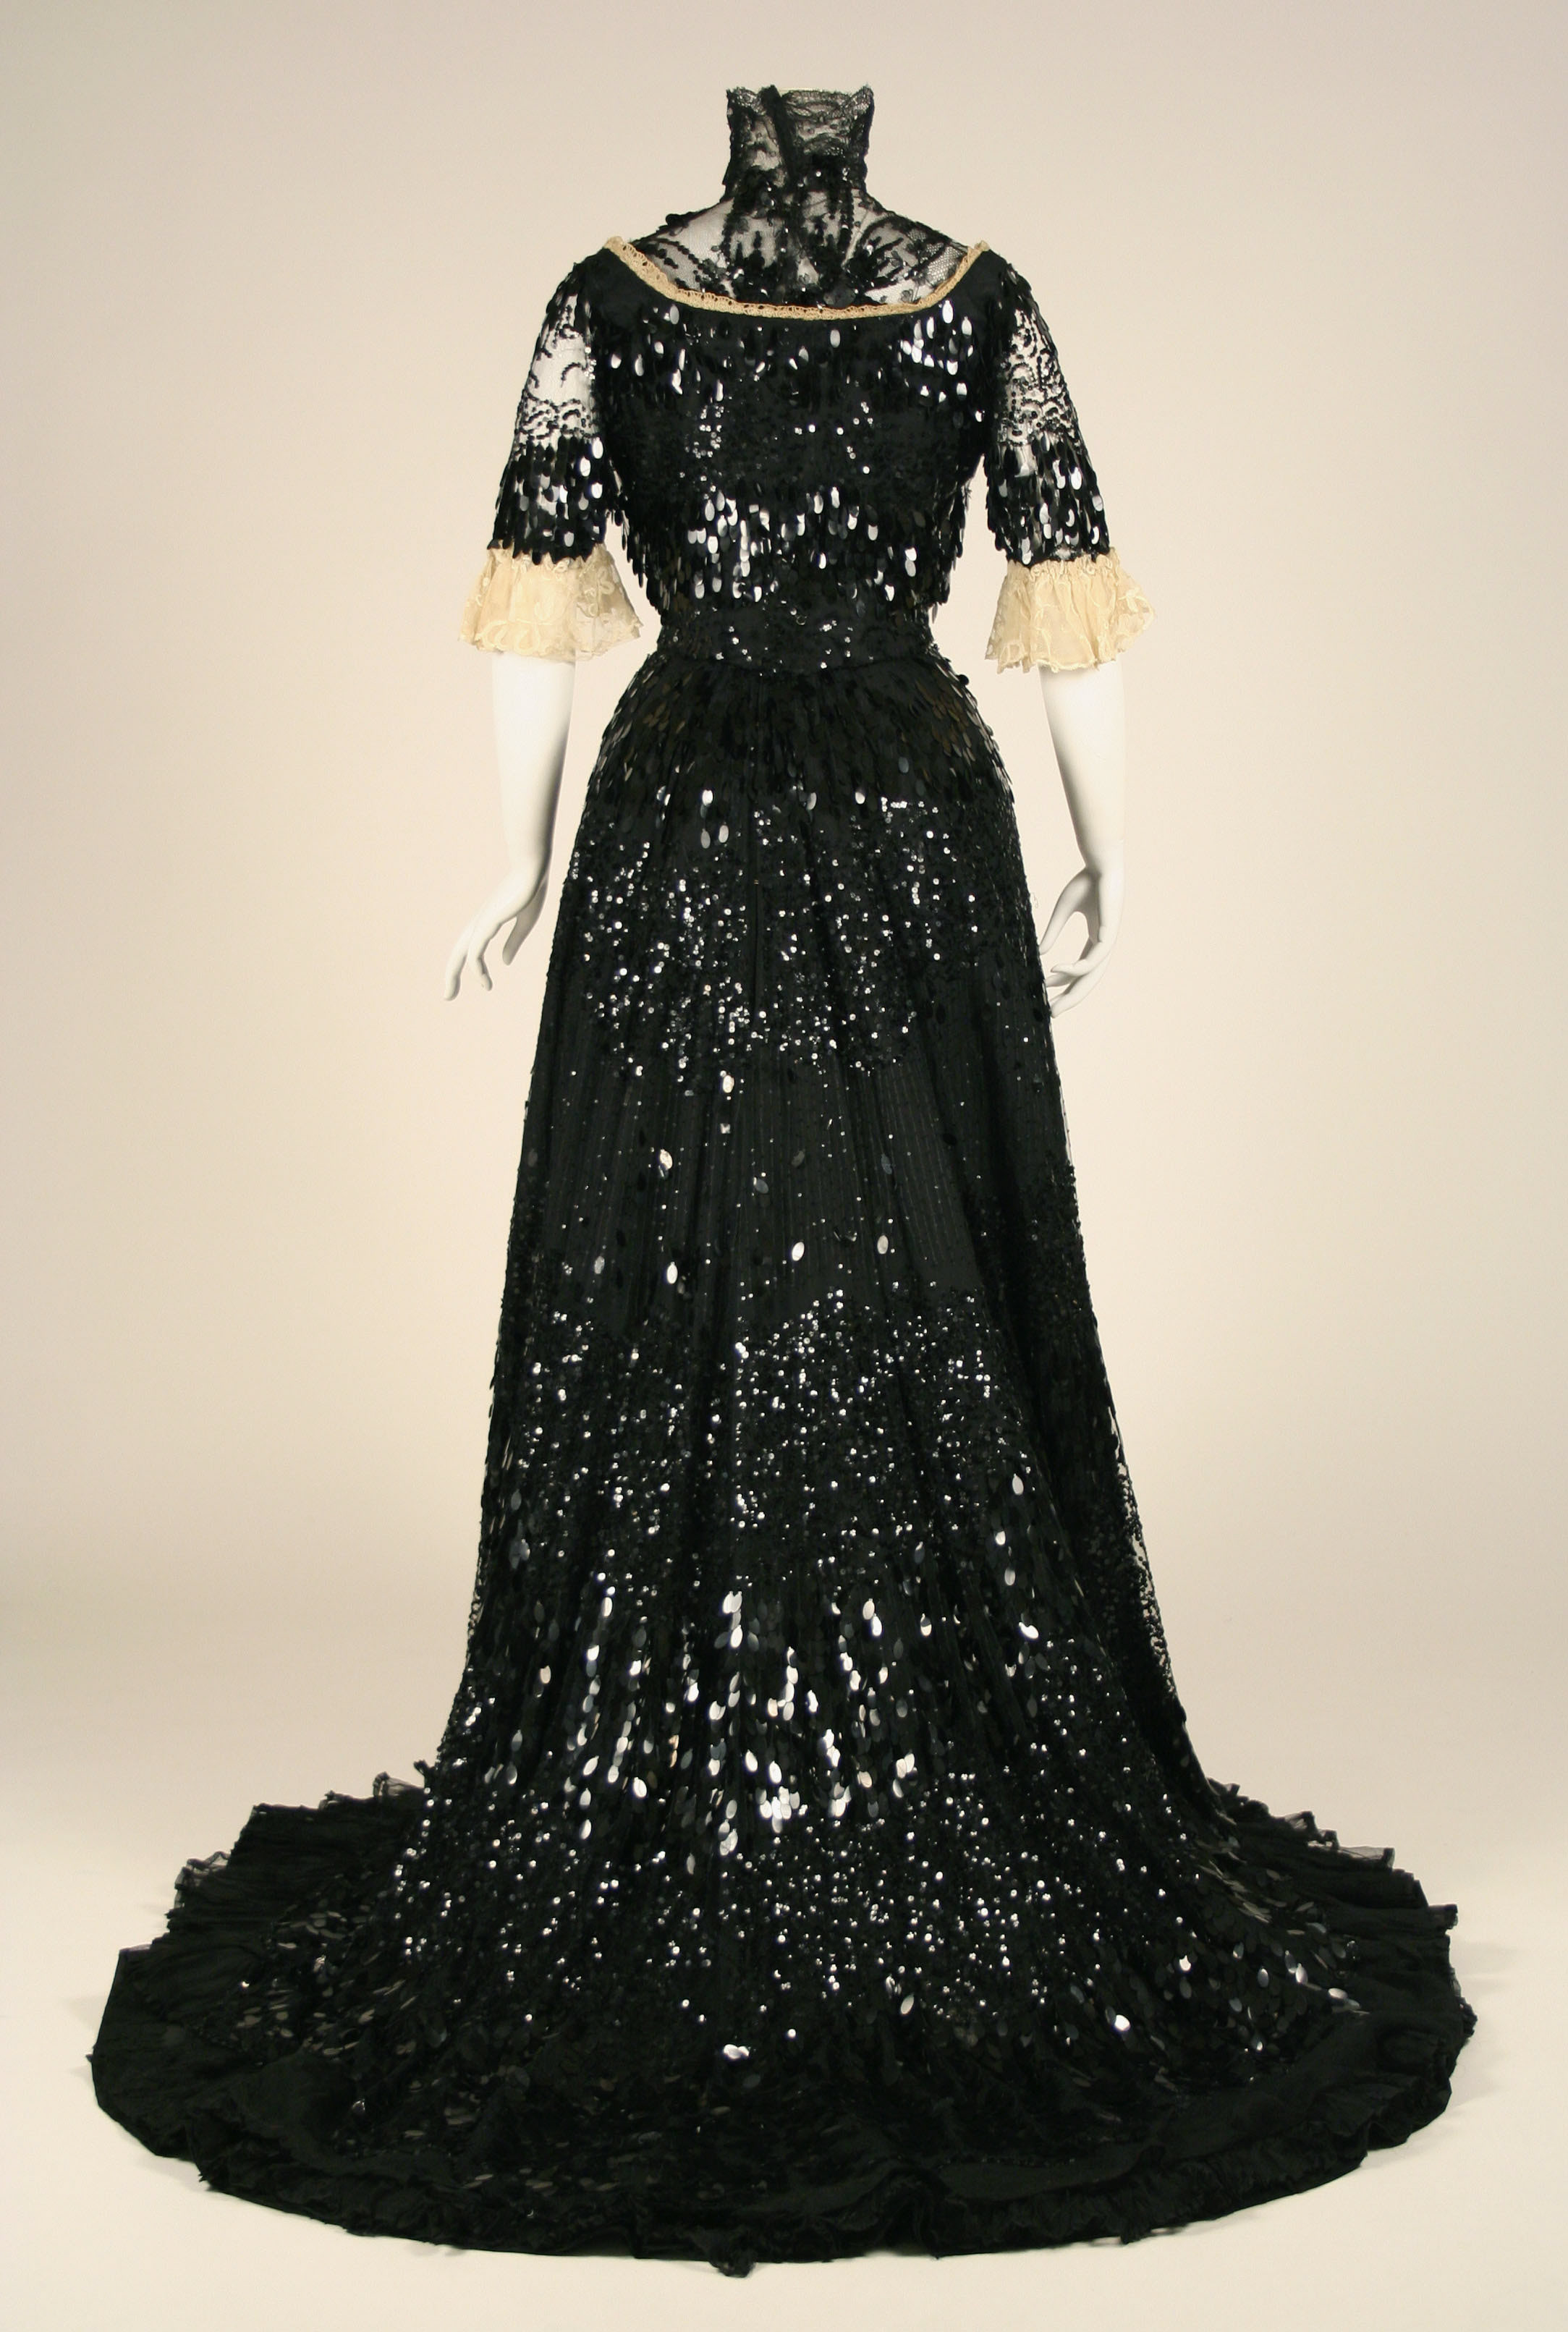 Henriette Favre | Evening dress | French | The Metropolitan Museum of Art